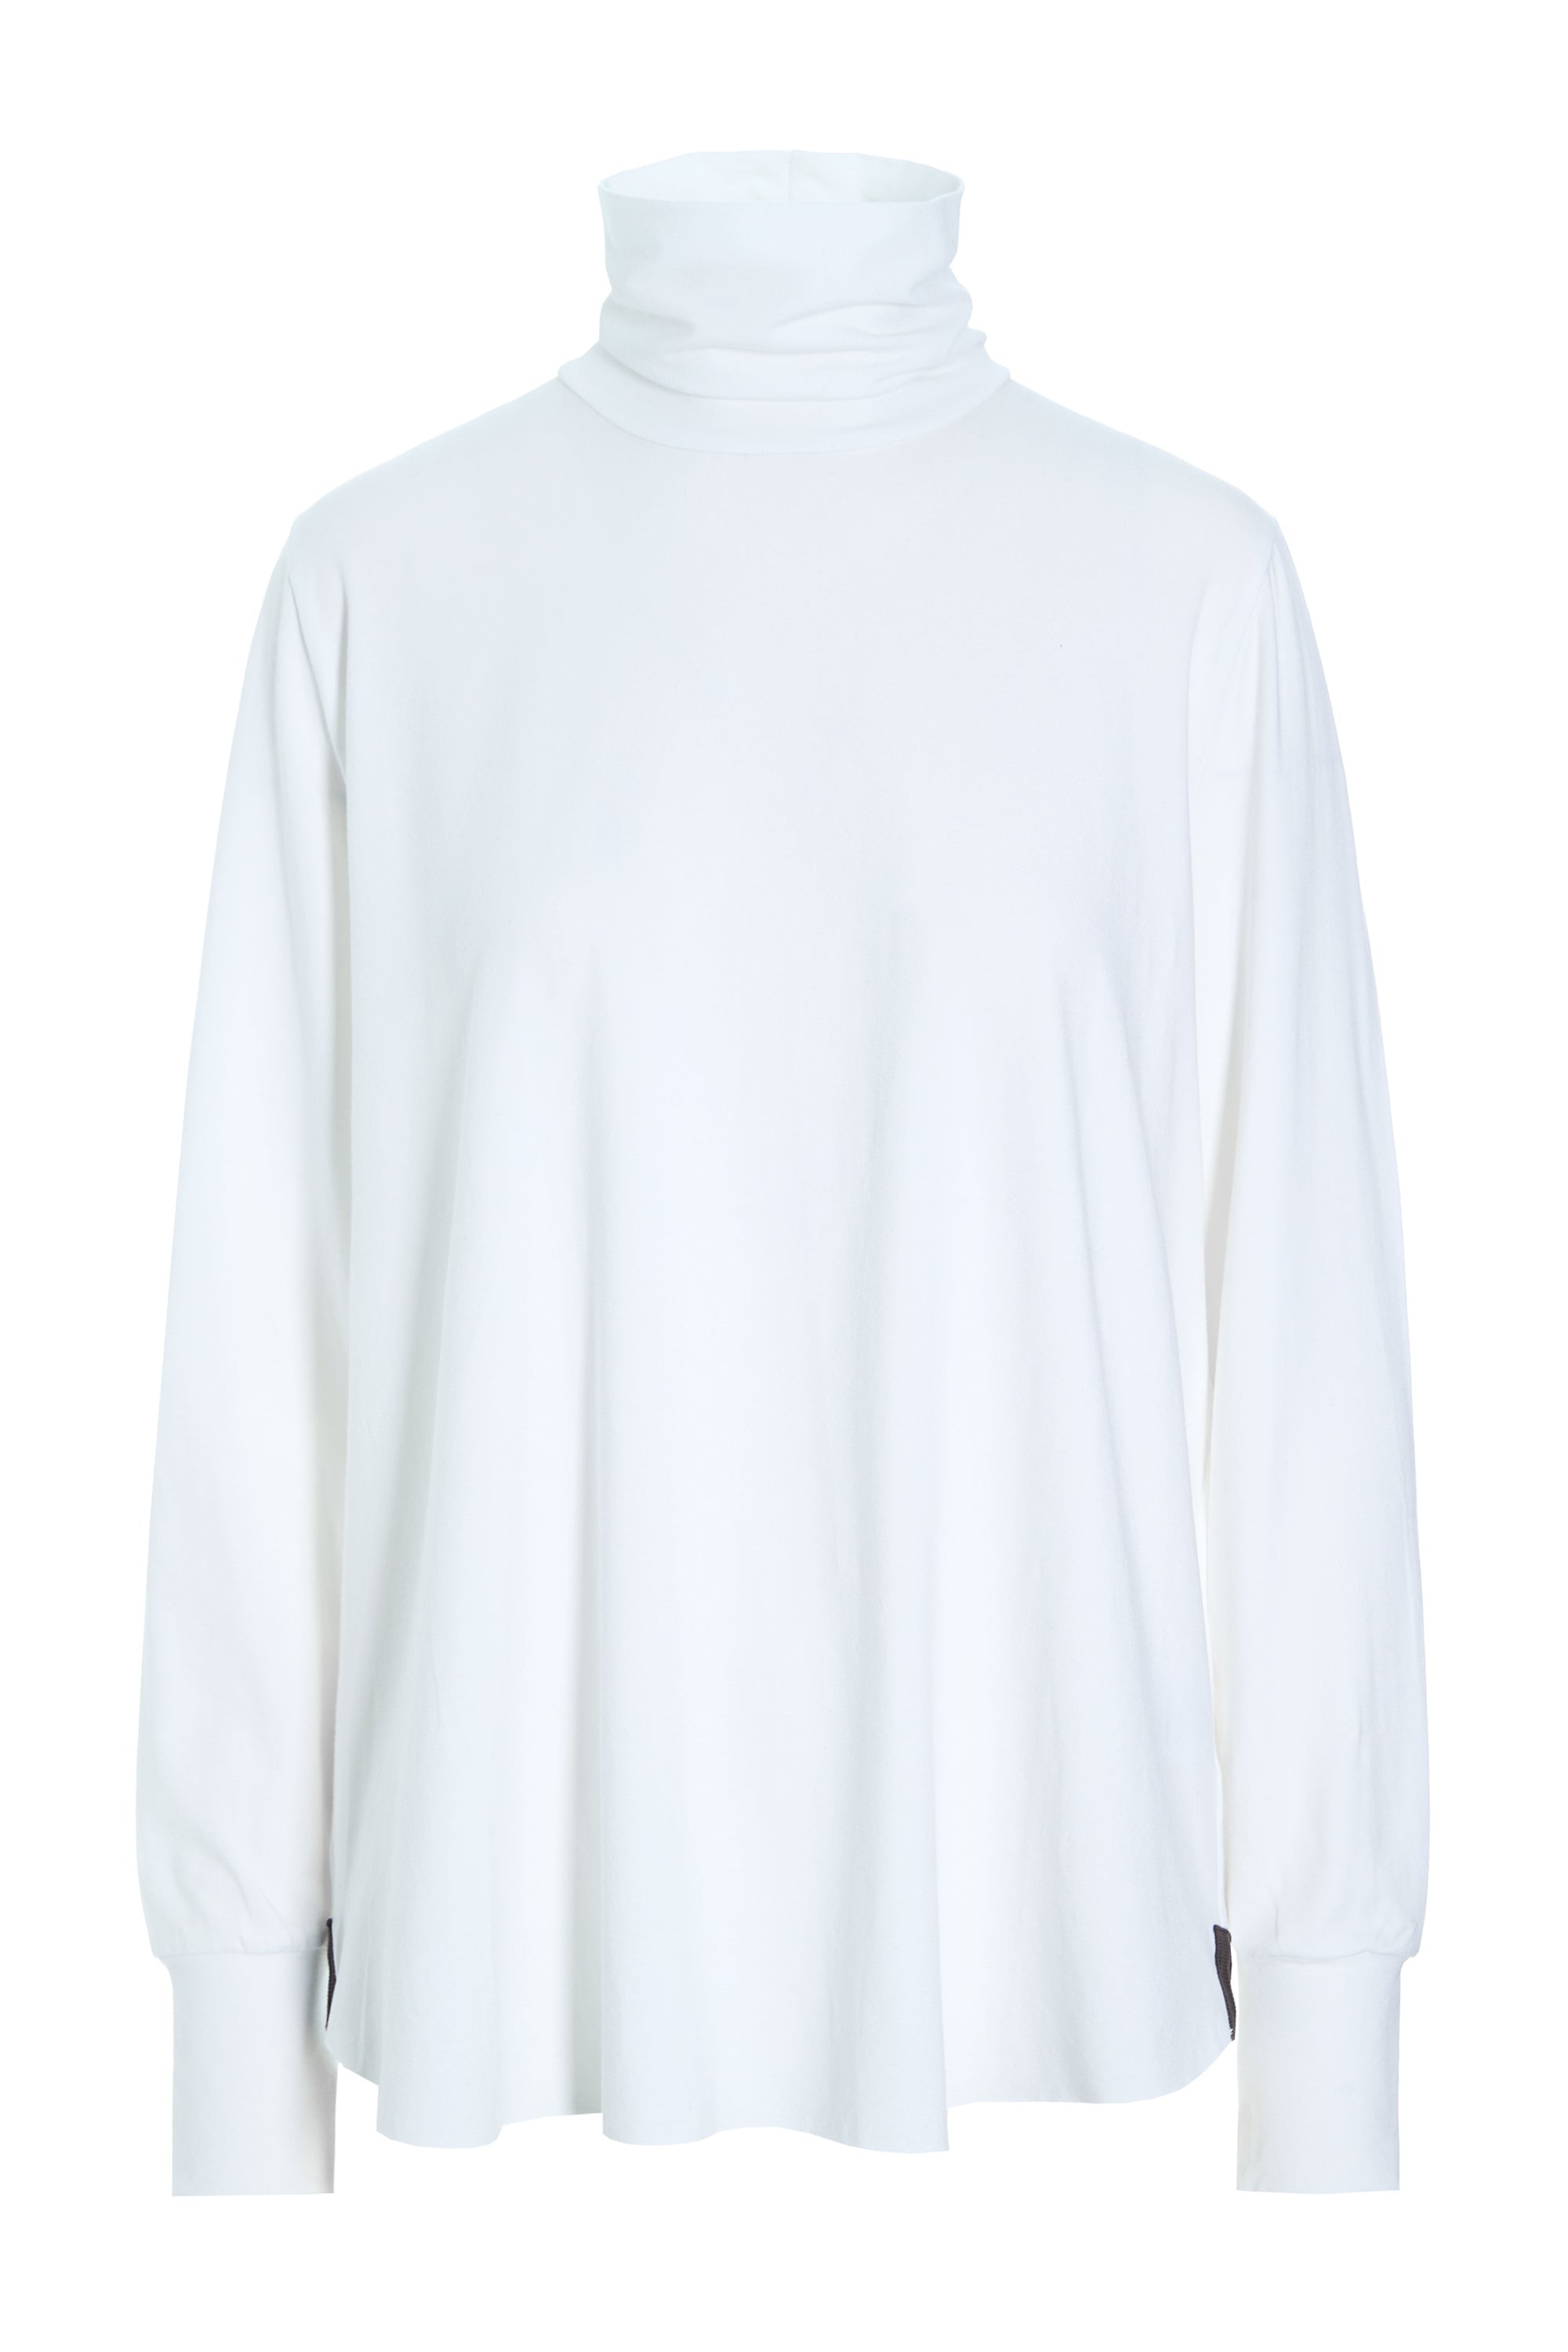 HENRIETTE STEFFENSEN COPENHAGEN BLOUSE HIGH NECK - 96077 BLUSER jersey WHITE 816